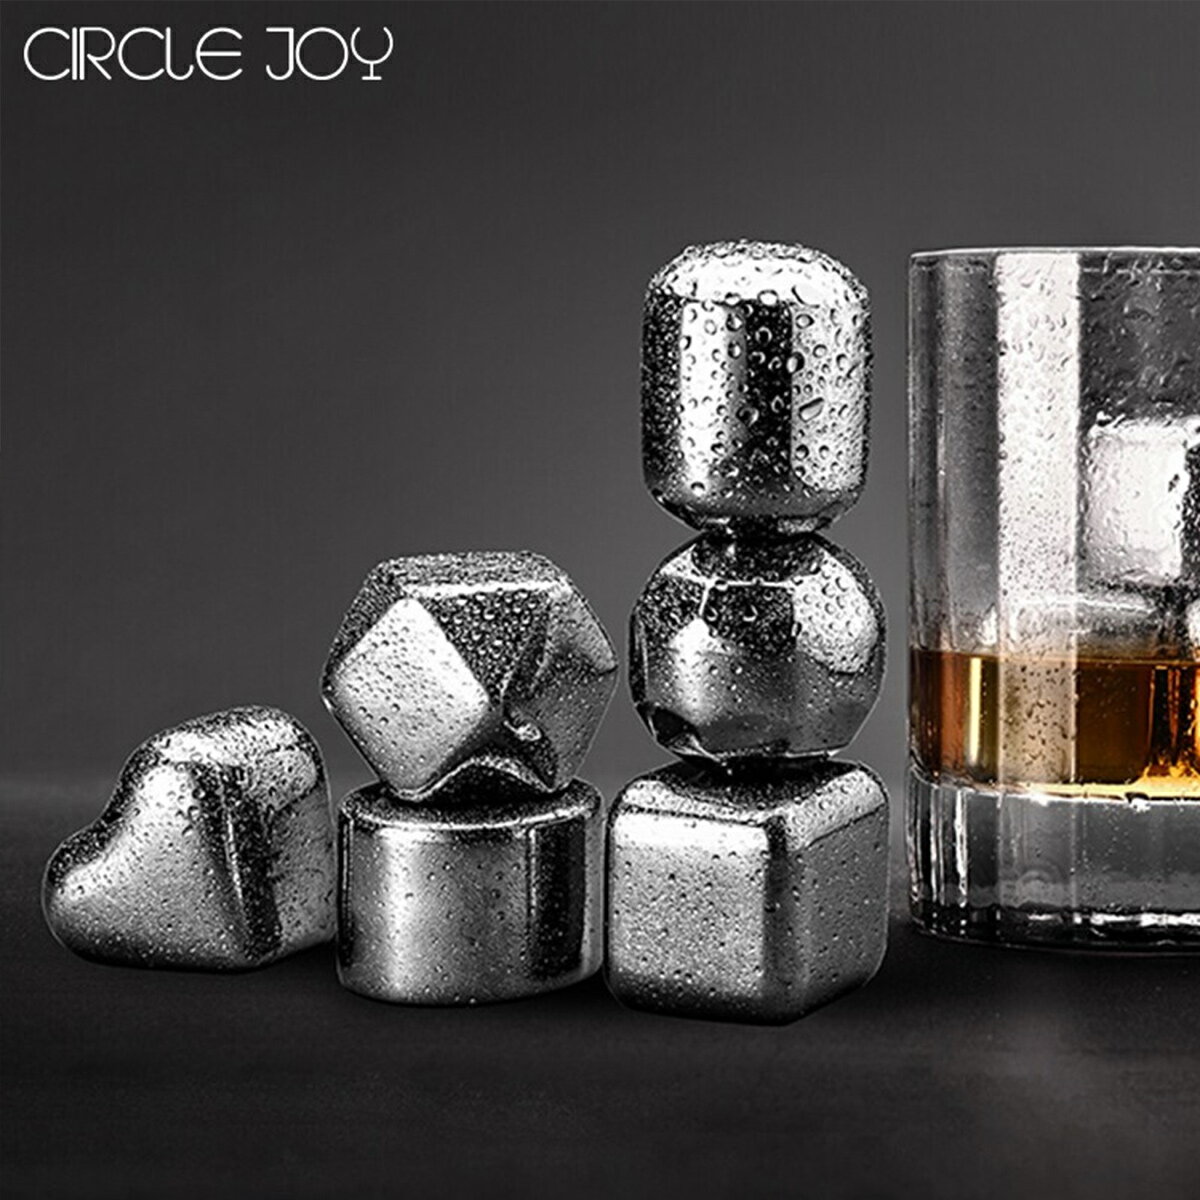 不鏽鋼冰塊 不鏽鋼速凍金屬冰塊冰粒威士忌烈酒洋酒冰酒石【HZ62694】